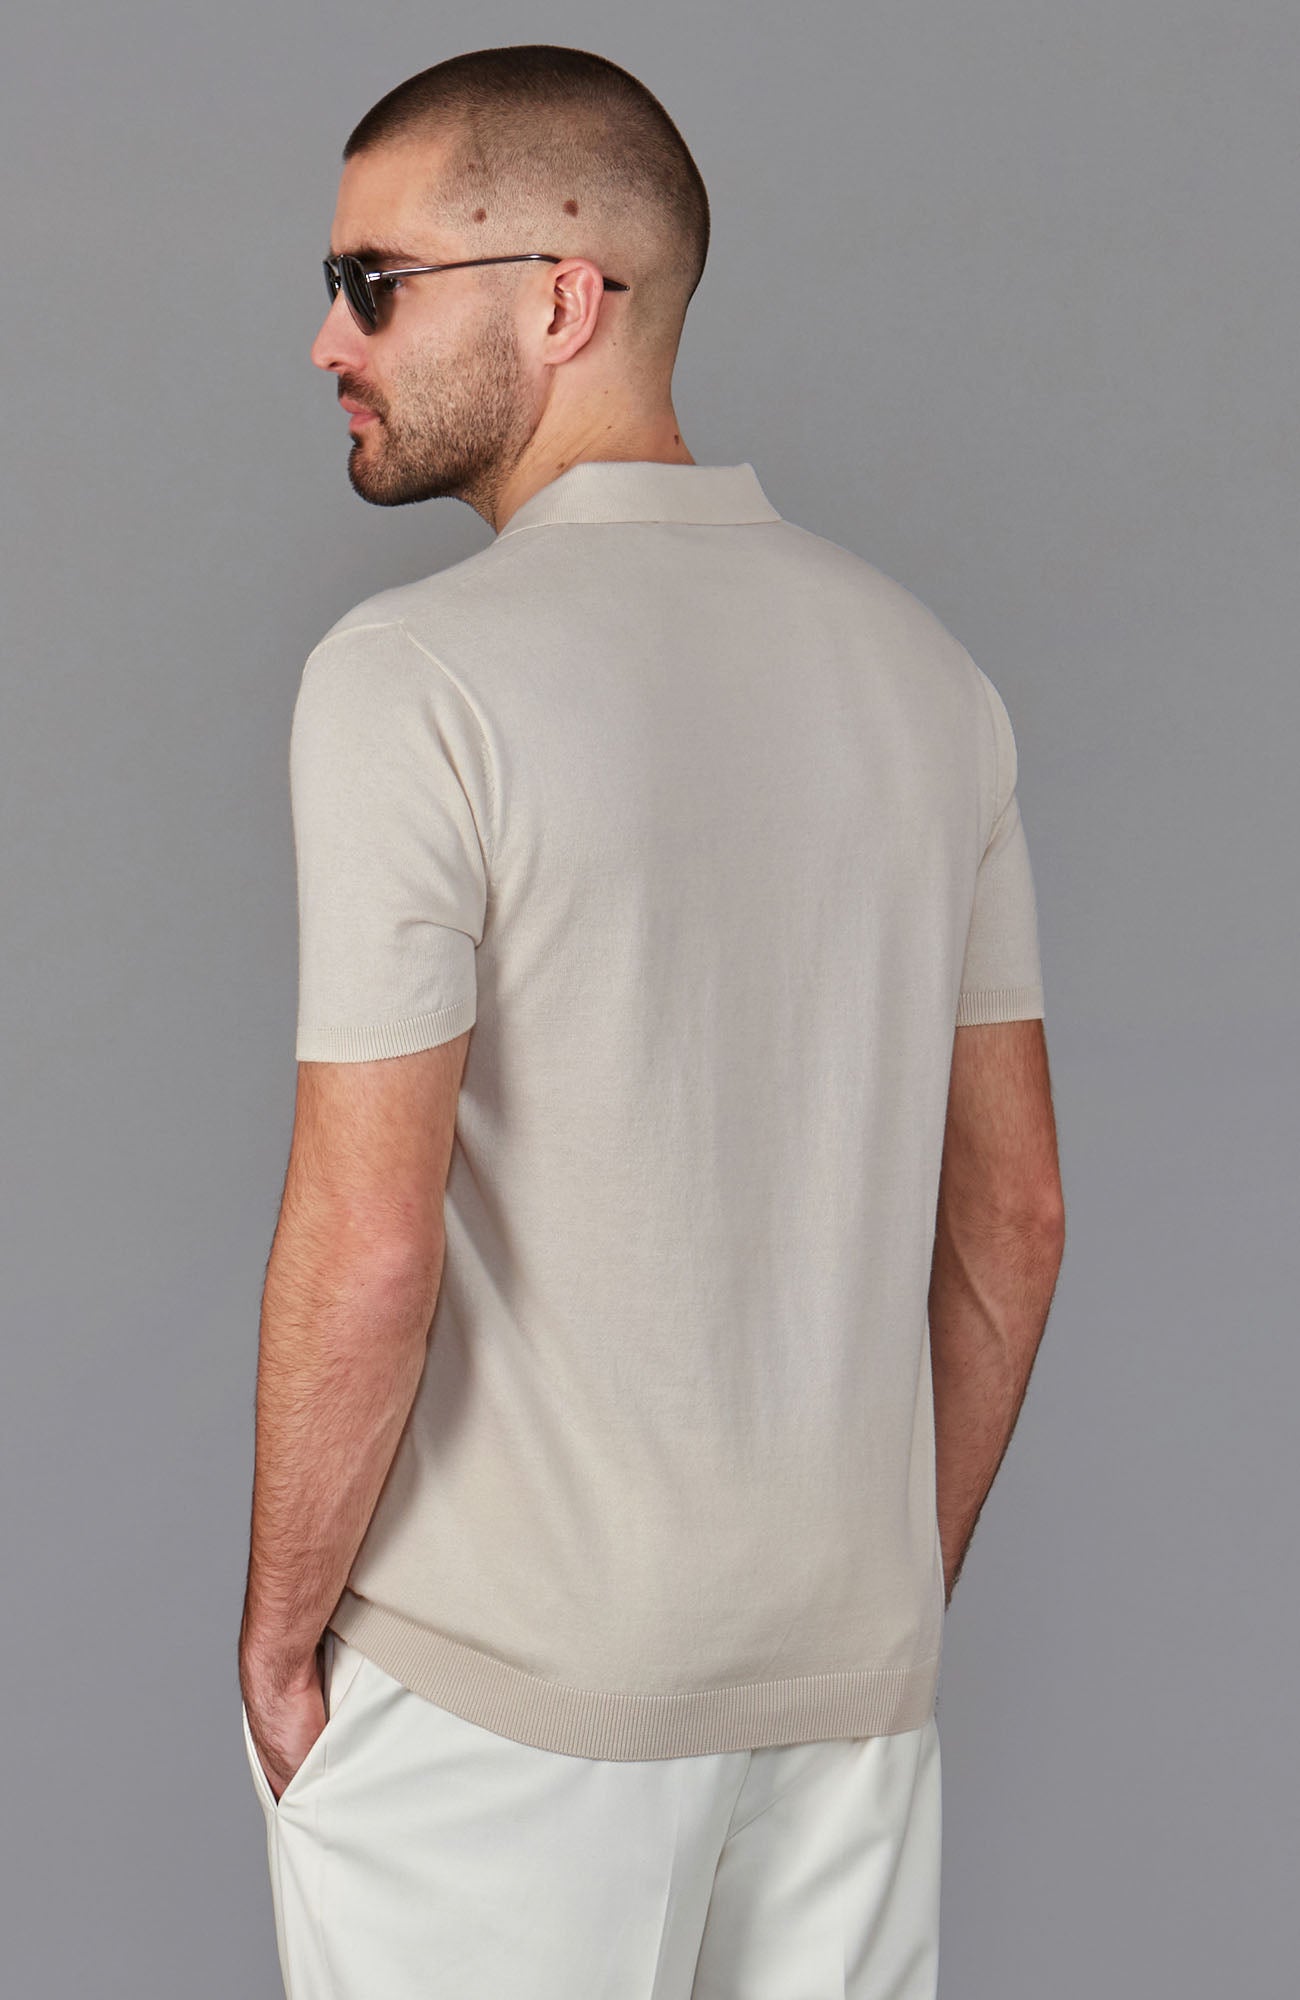 birch mens buttonless polo shirt